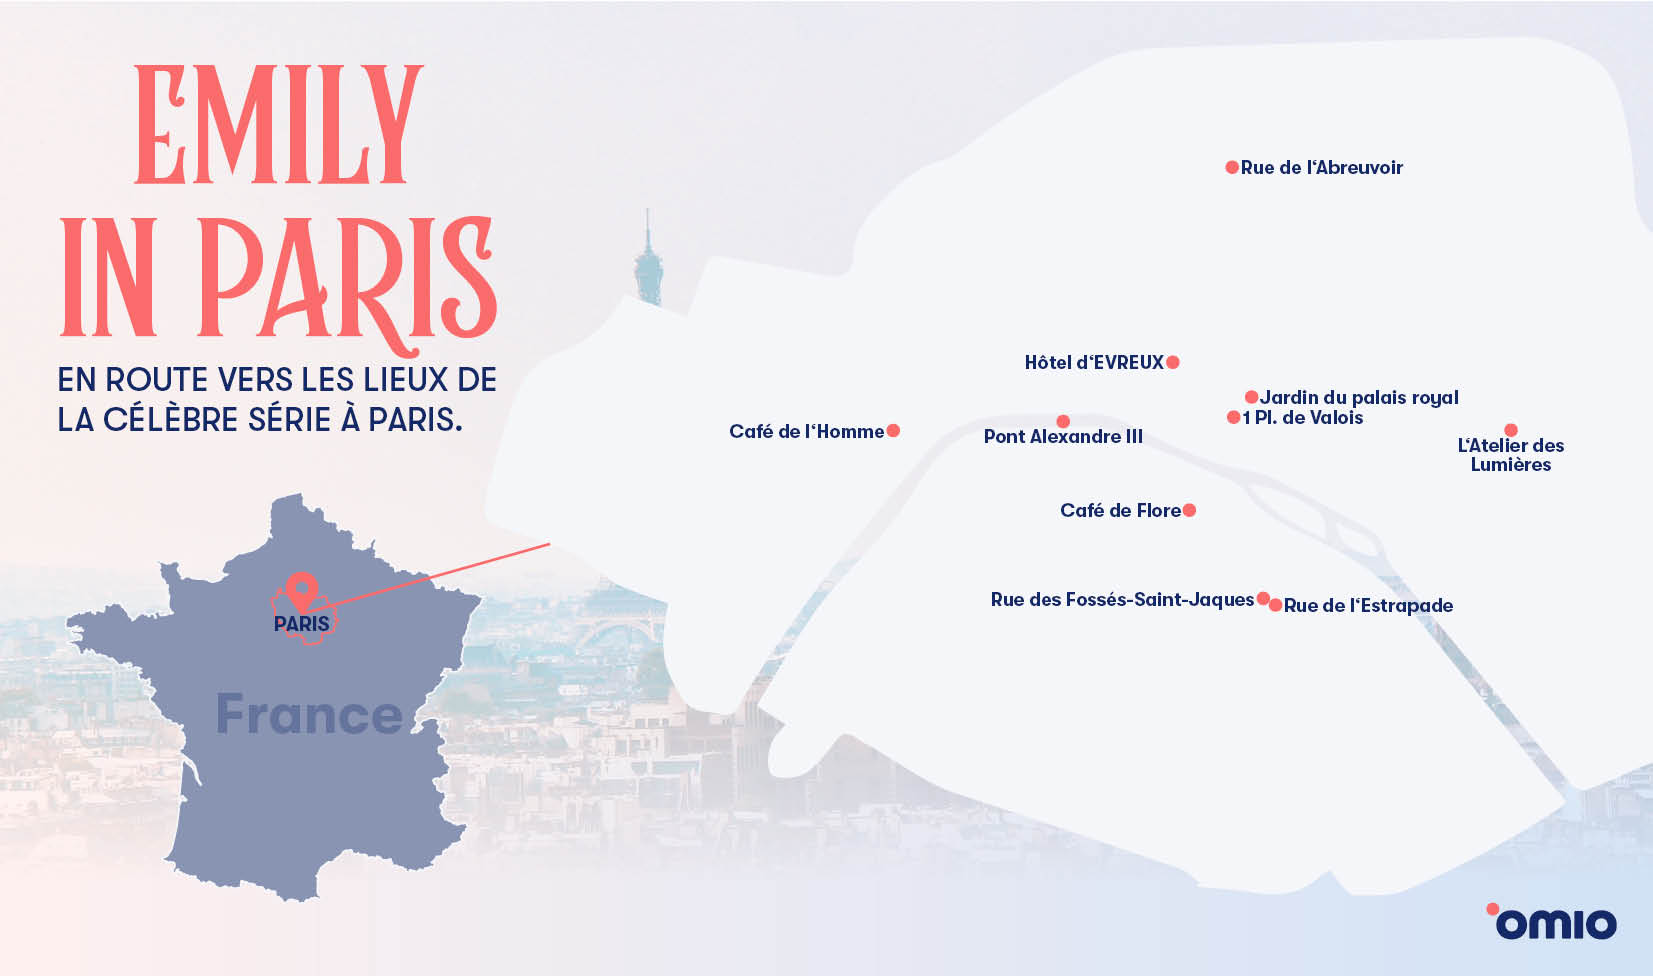 Grafik Itineraire en France-Emily in Paris